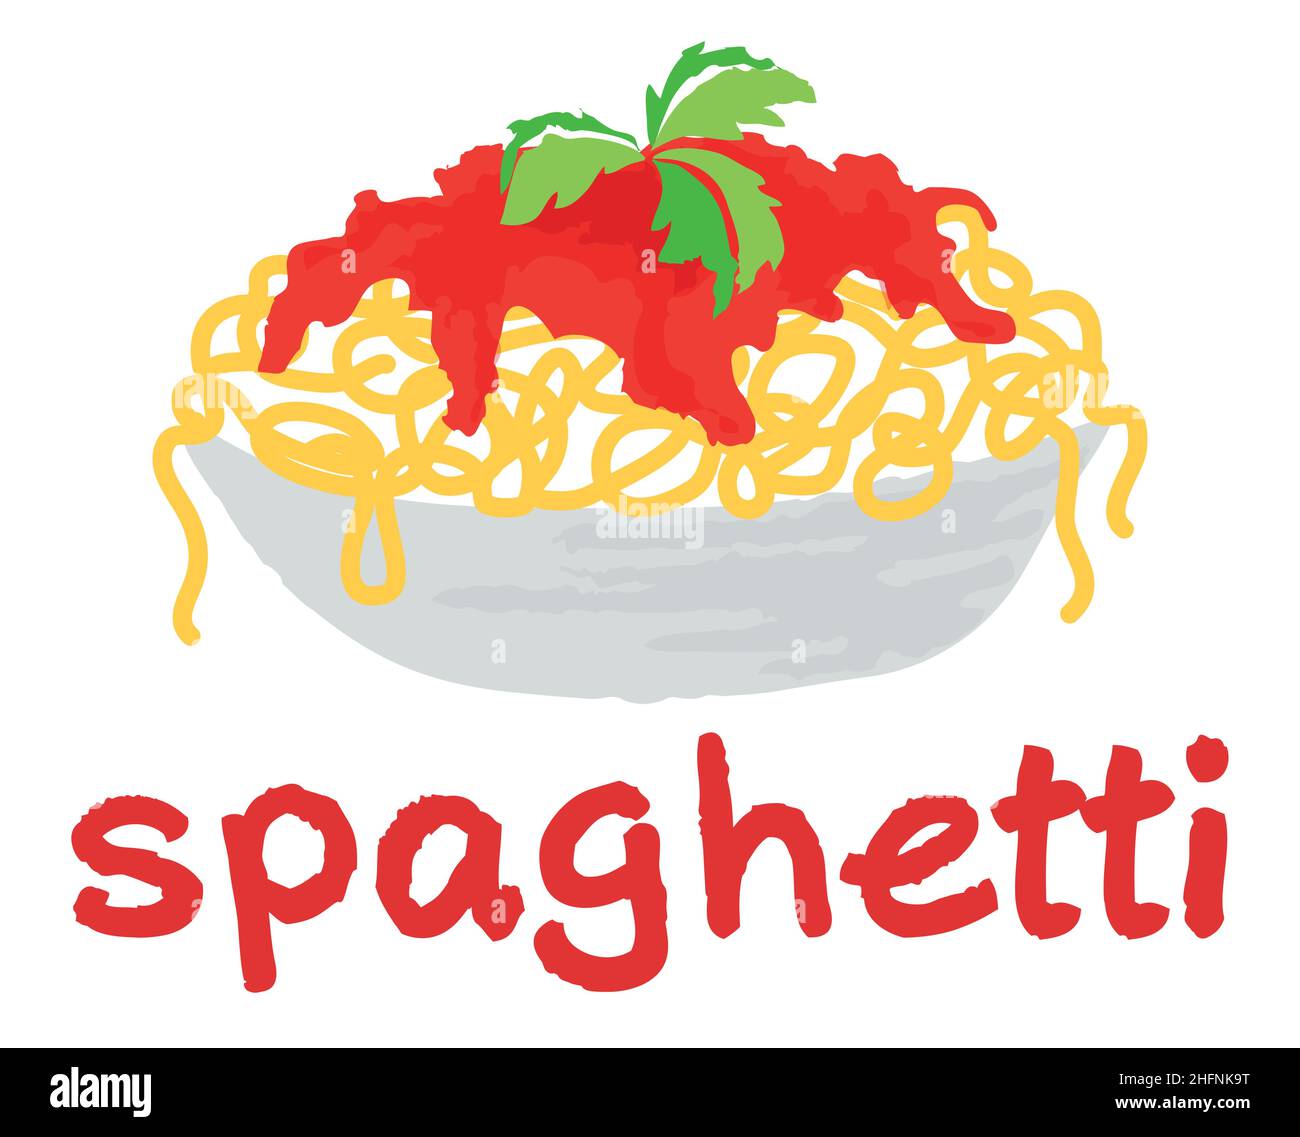 Adesivo spaghetti. Illustrazione vettoriale in stile acquerello, per grafica e web design Illustrazione Vettoriale